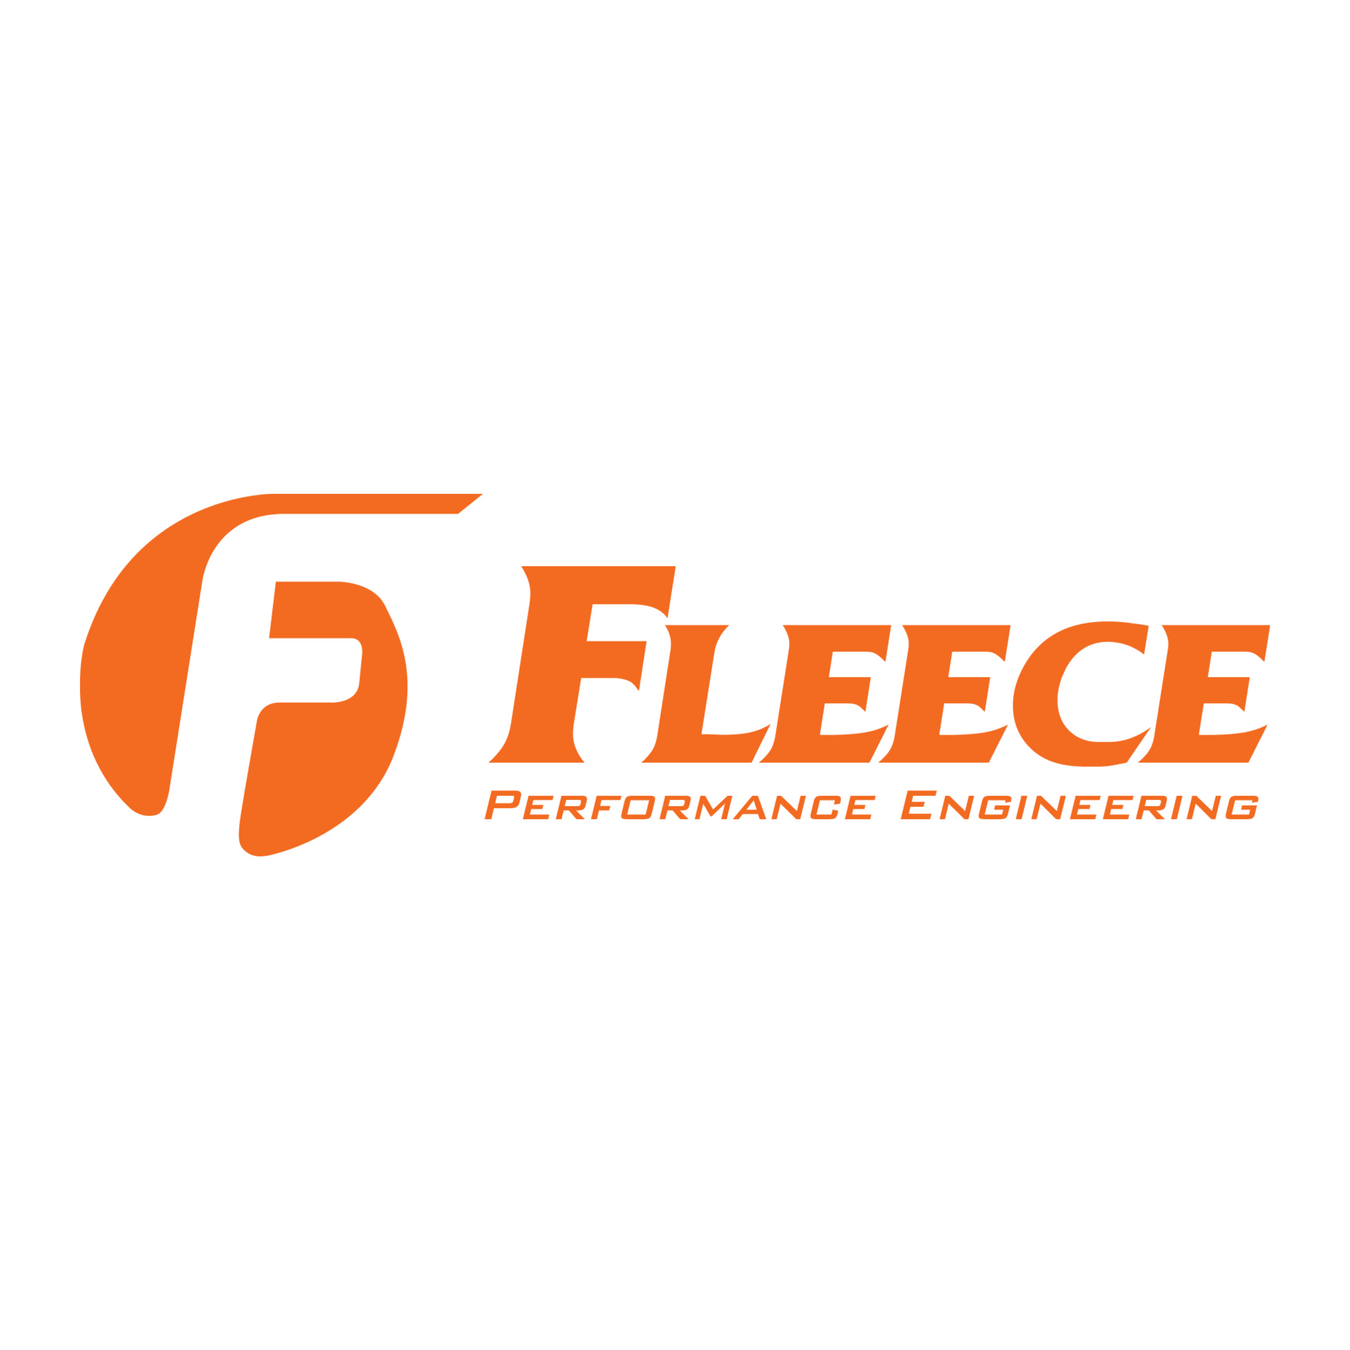 Fleece Performance